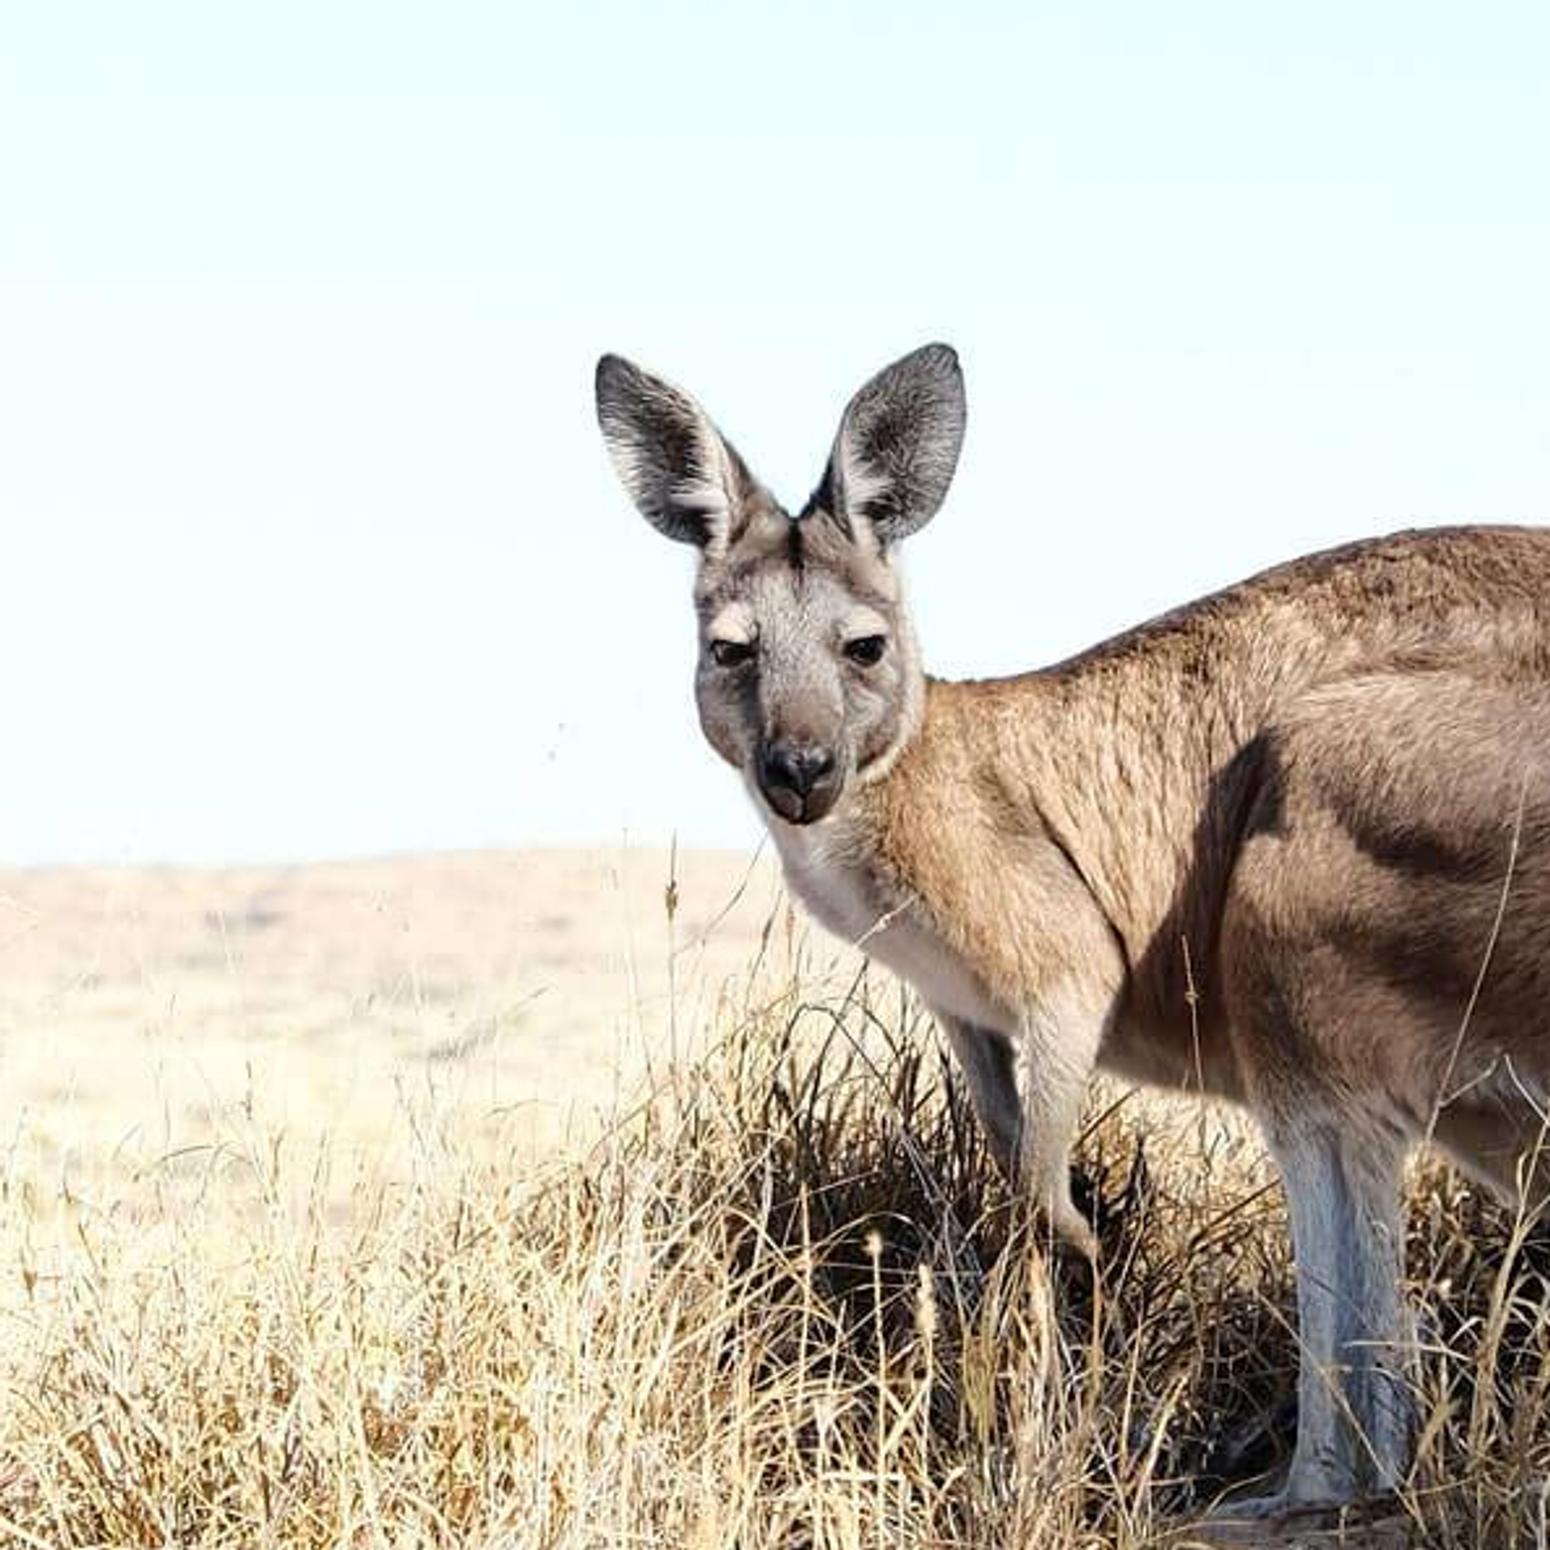 Bild von einem Kangaroo in der australischen Wüste